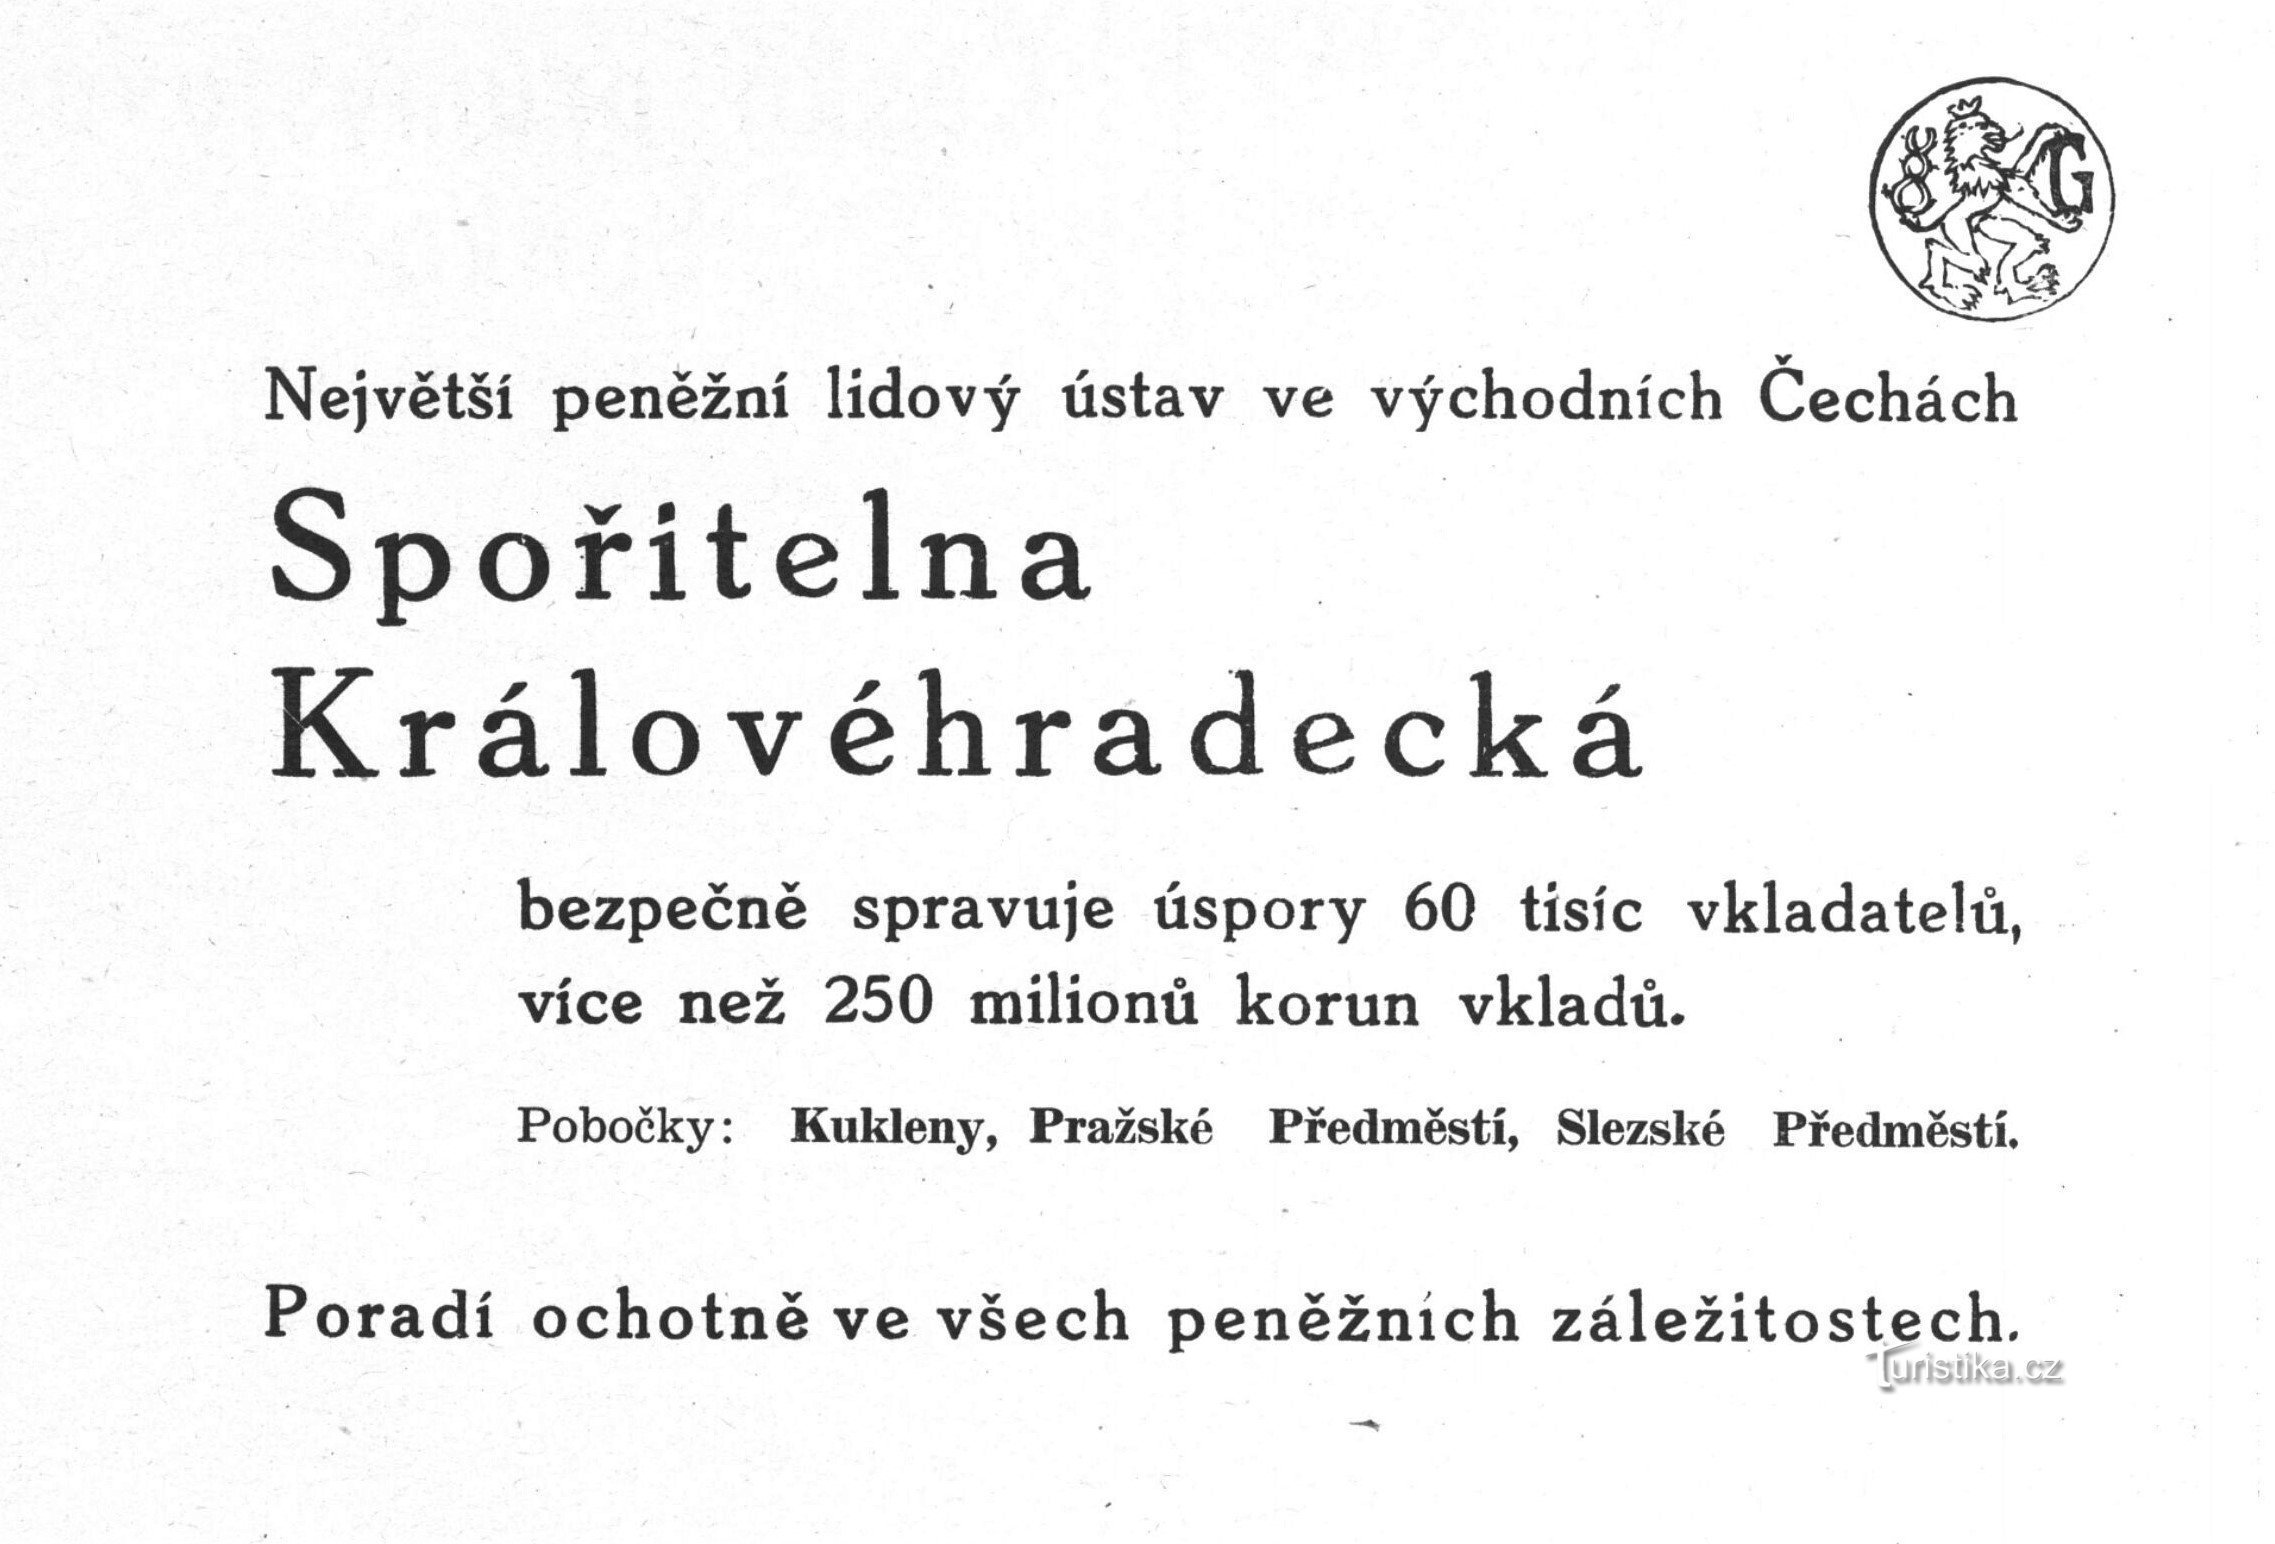 Annonce for Spořitelna Královéhradecké fra 1941